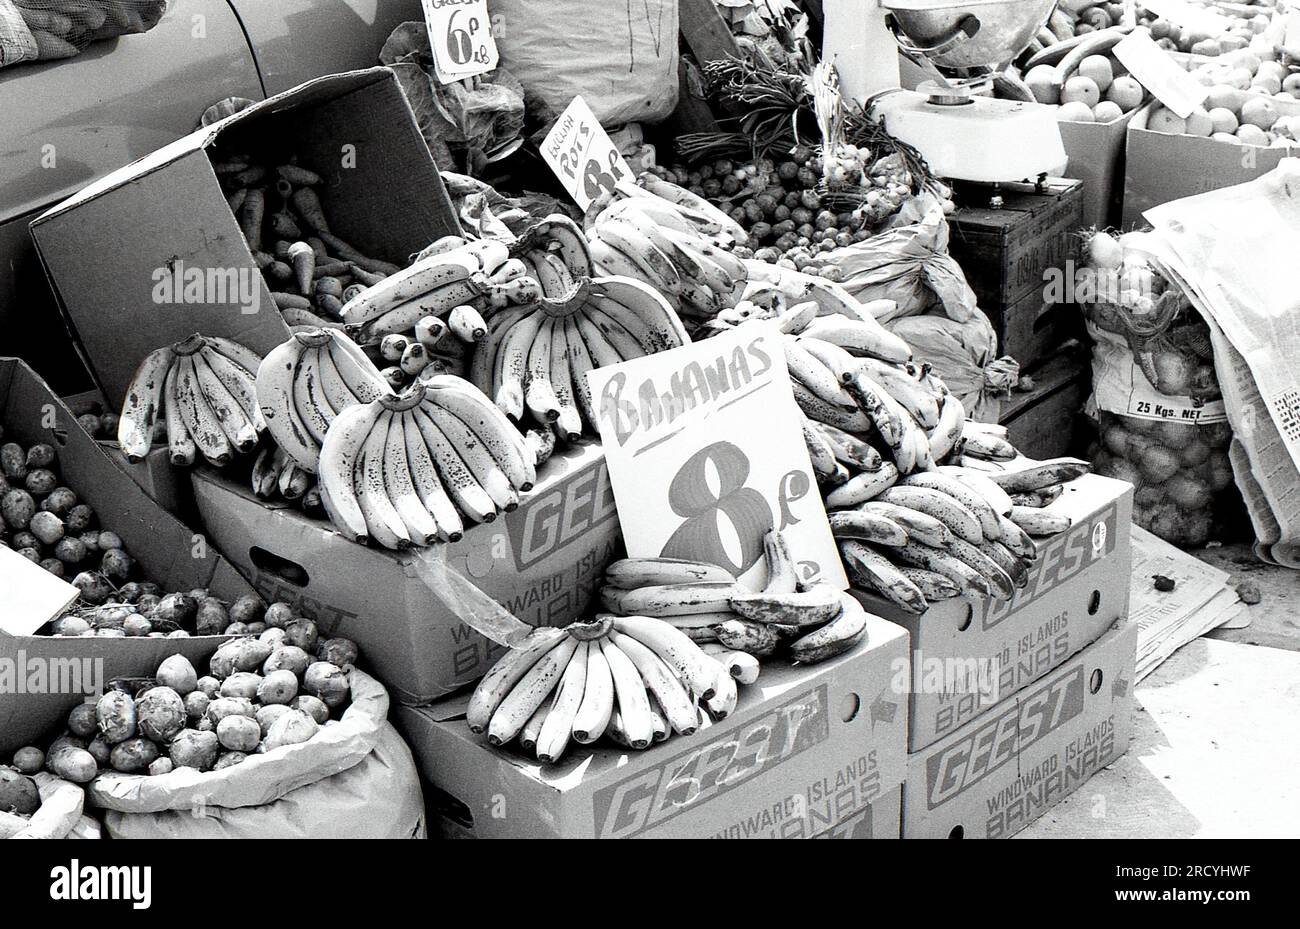 Hands of Geest Bananas in vendita su una bancarella di frutta e verdura al Bolney Market nel West Sussex, Inghilterra, il 27 giugno 1976. La Geest vendette la sua attività nel settore della banana nel 1995. Foto Stock